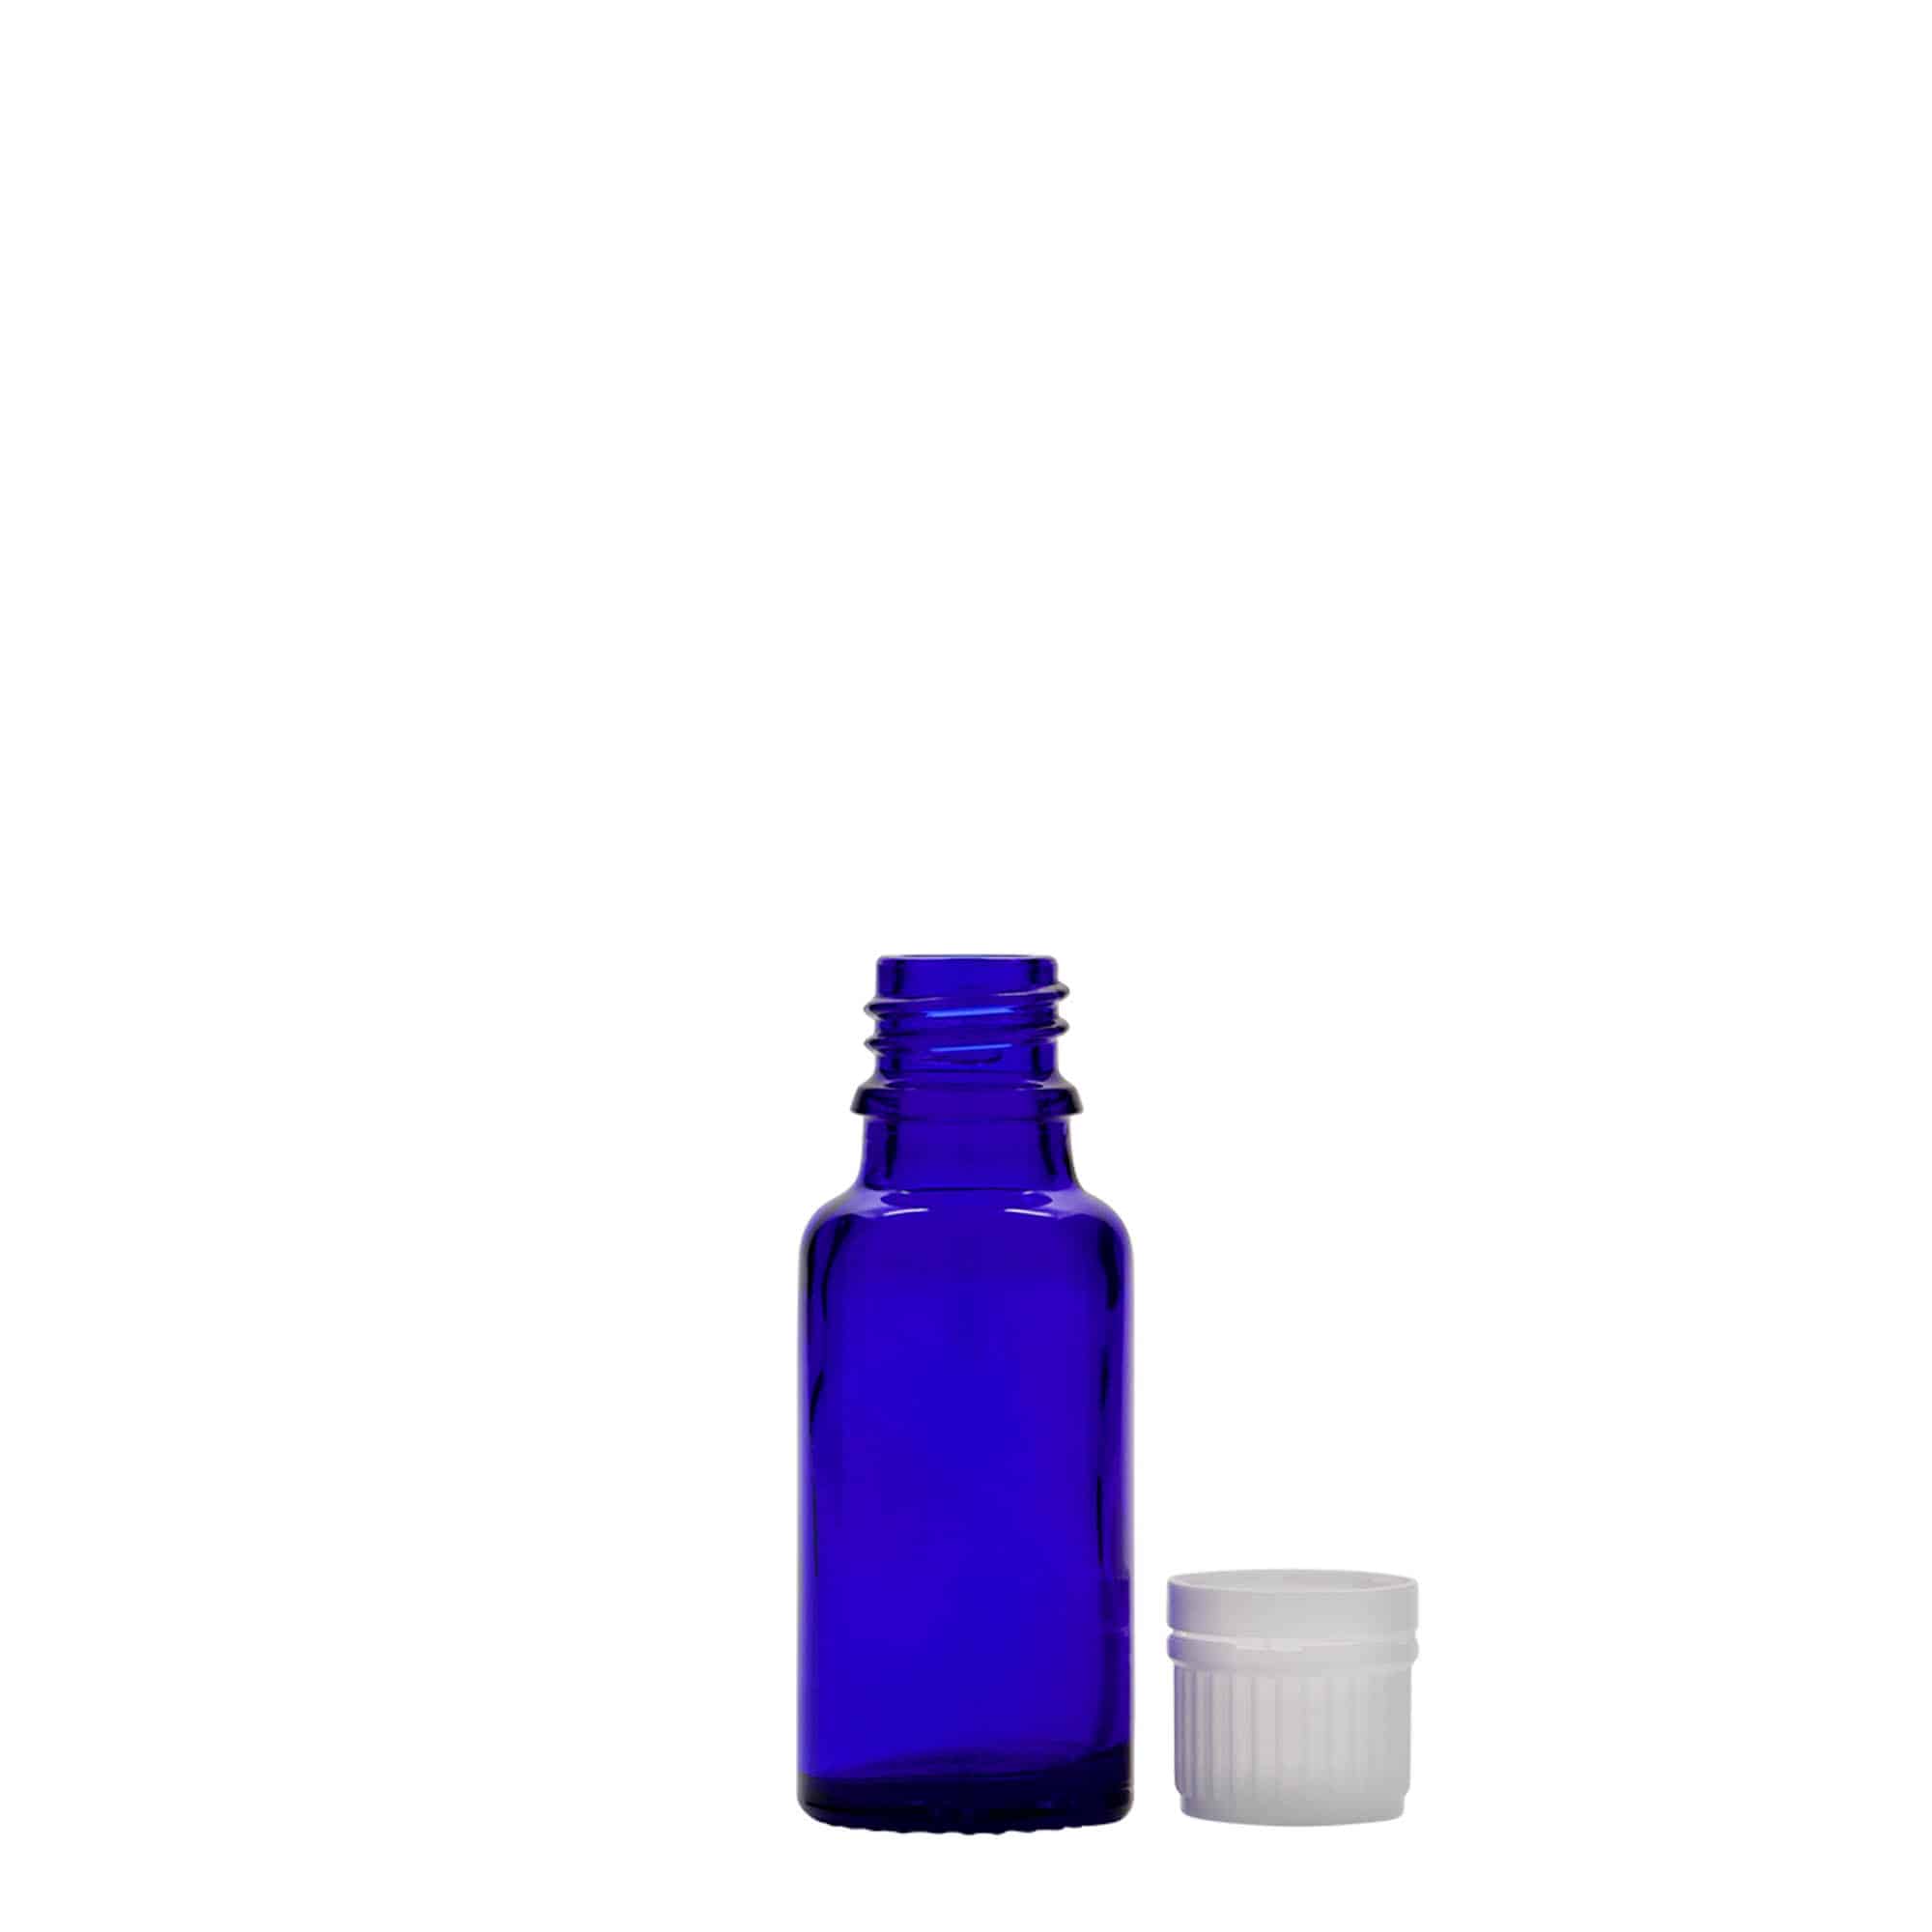 20 ml butelka farmaceutyczna, szkło, kolor błękit królewski, zamknięcie: DIN 18